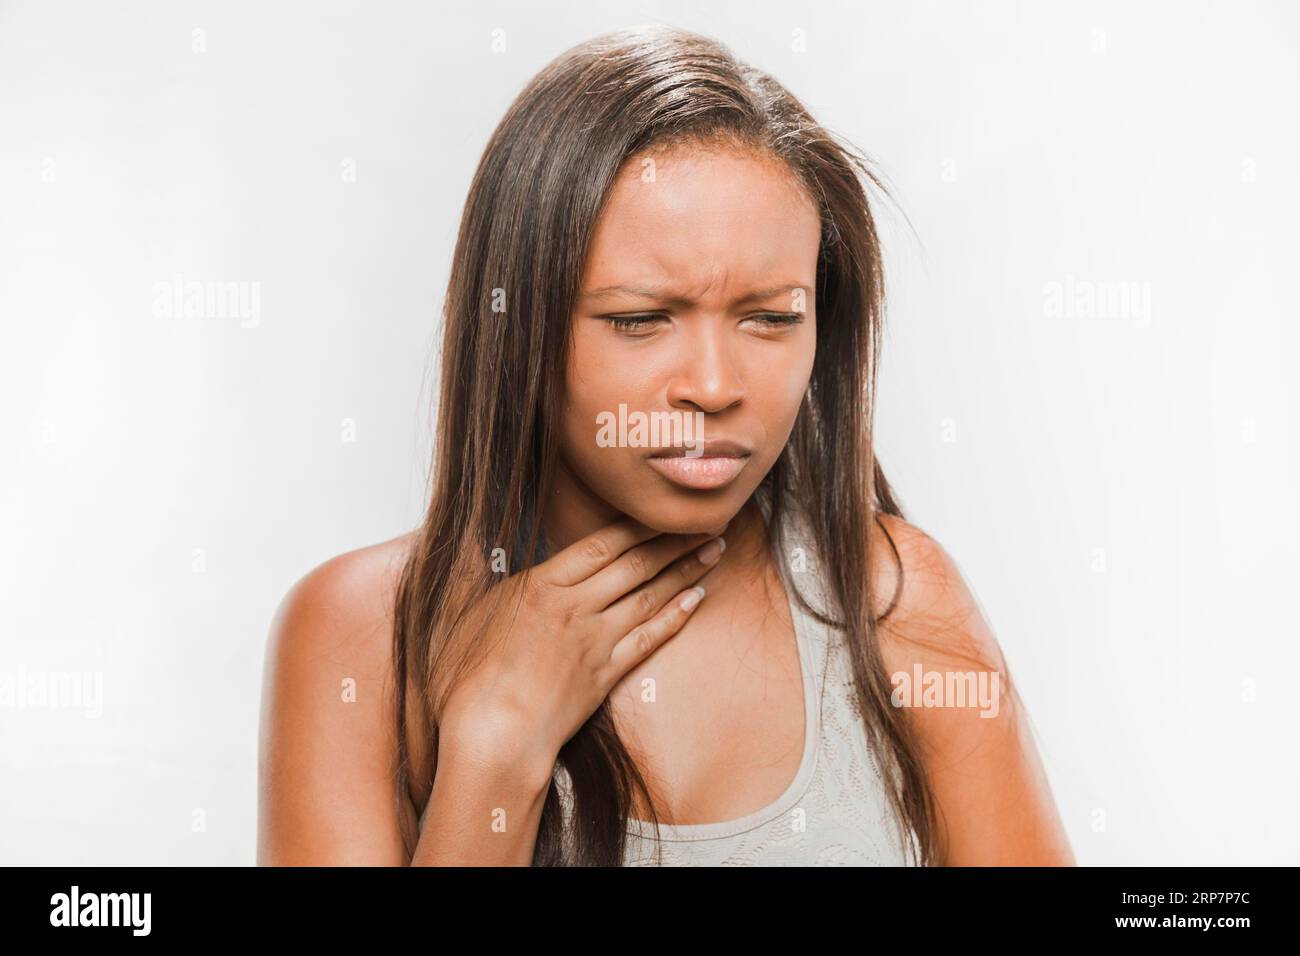 Porträtkrankes Teenager-Mädchen mit Halsschmerzen Stockfoto